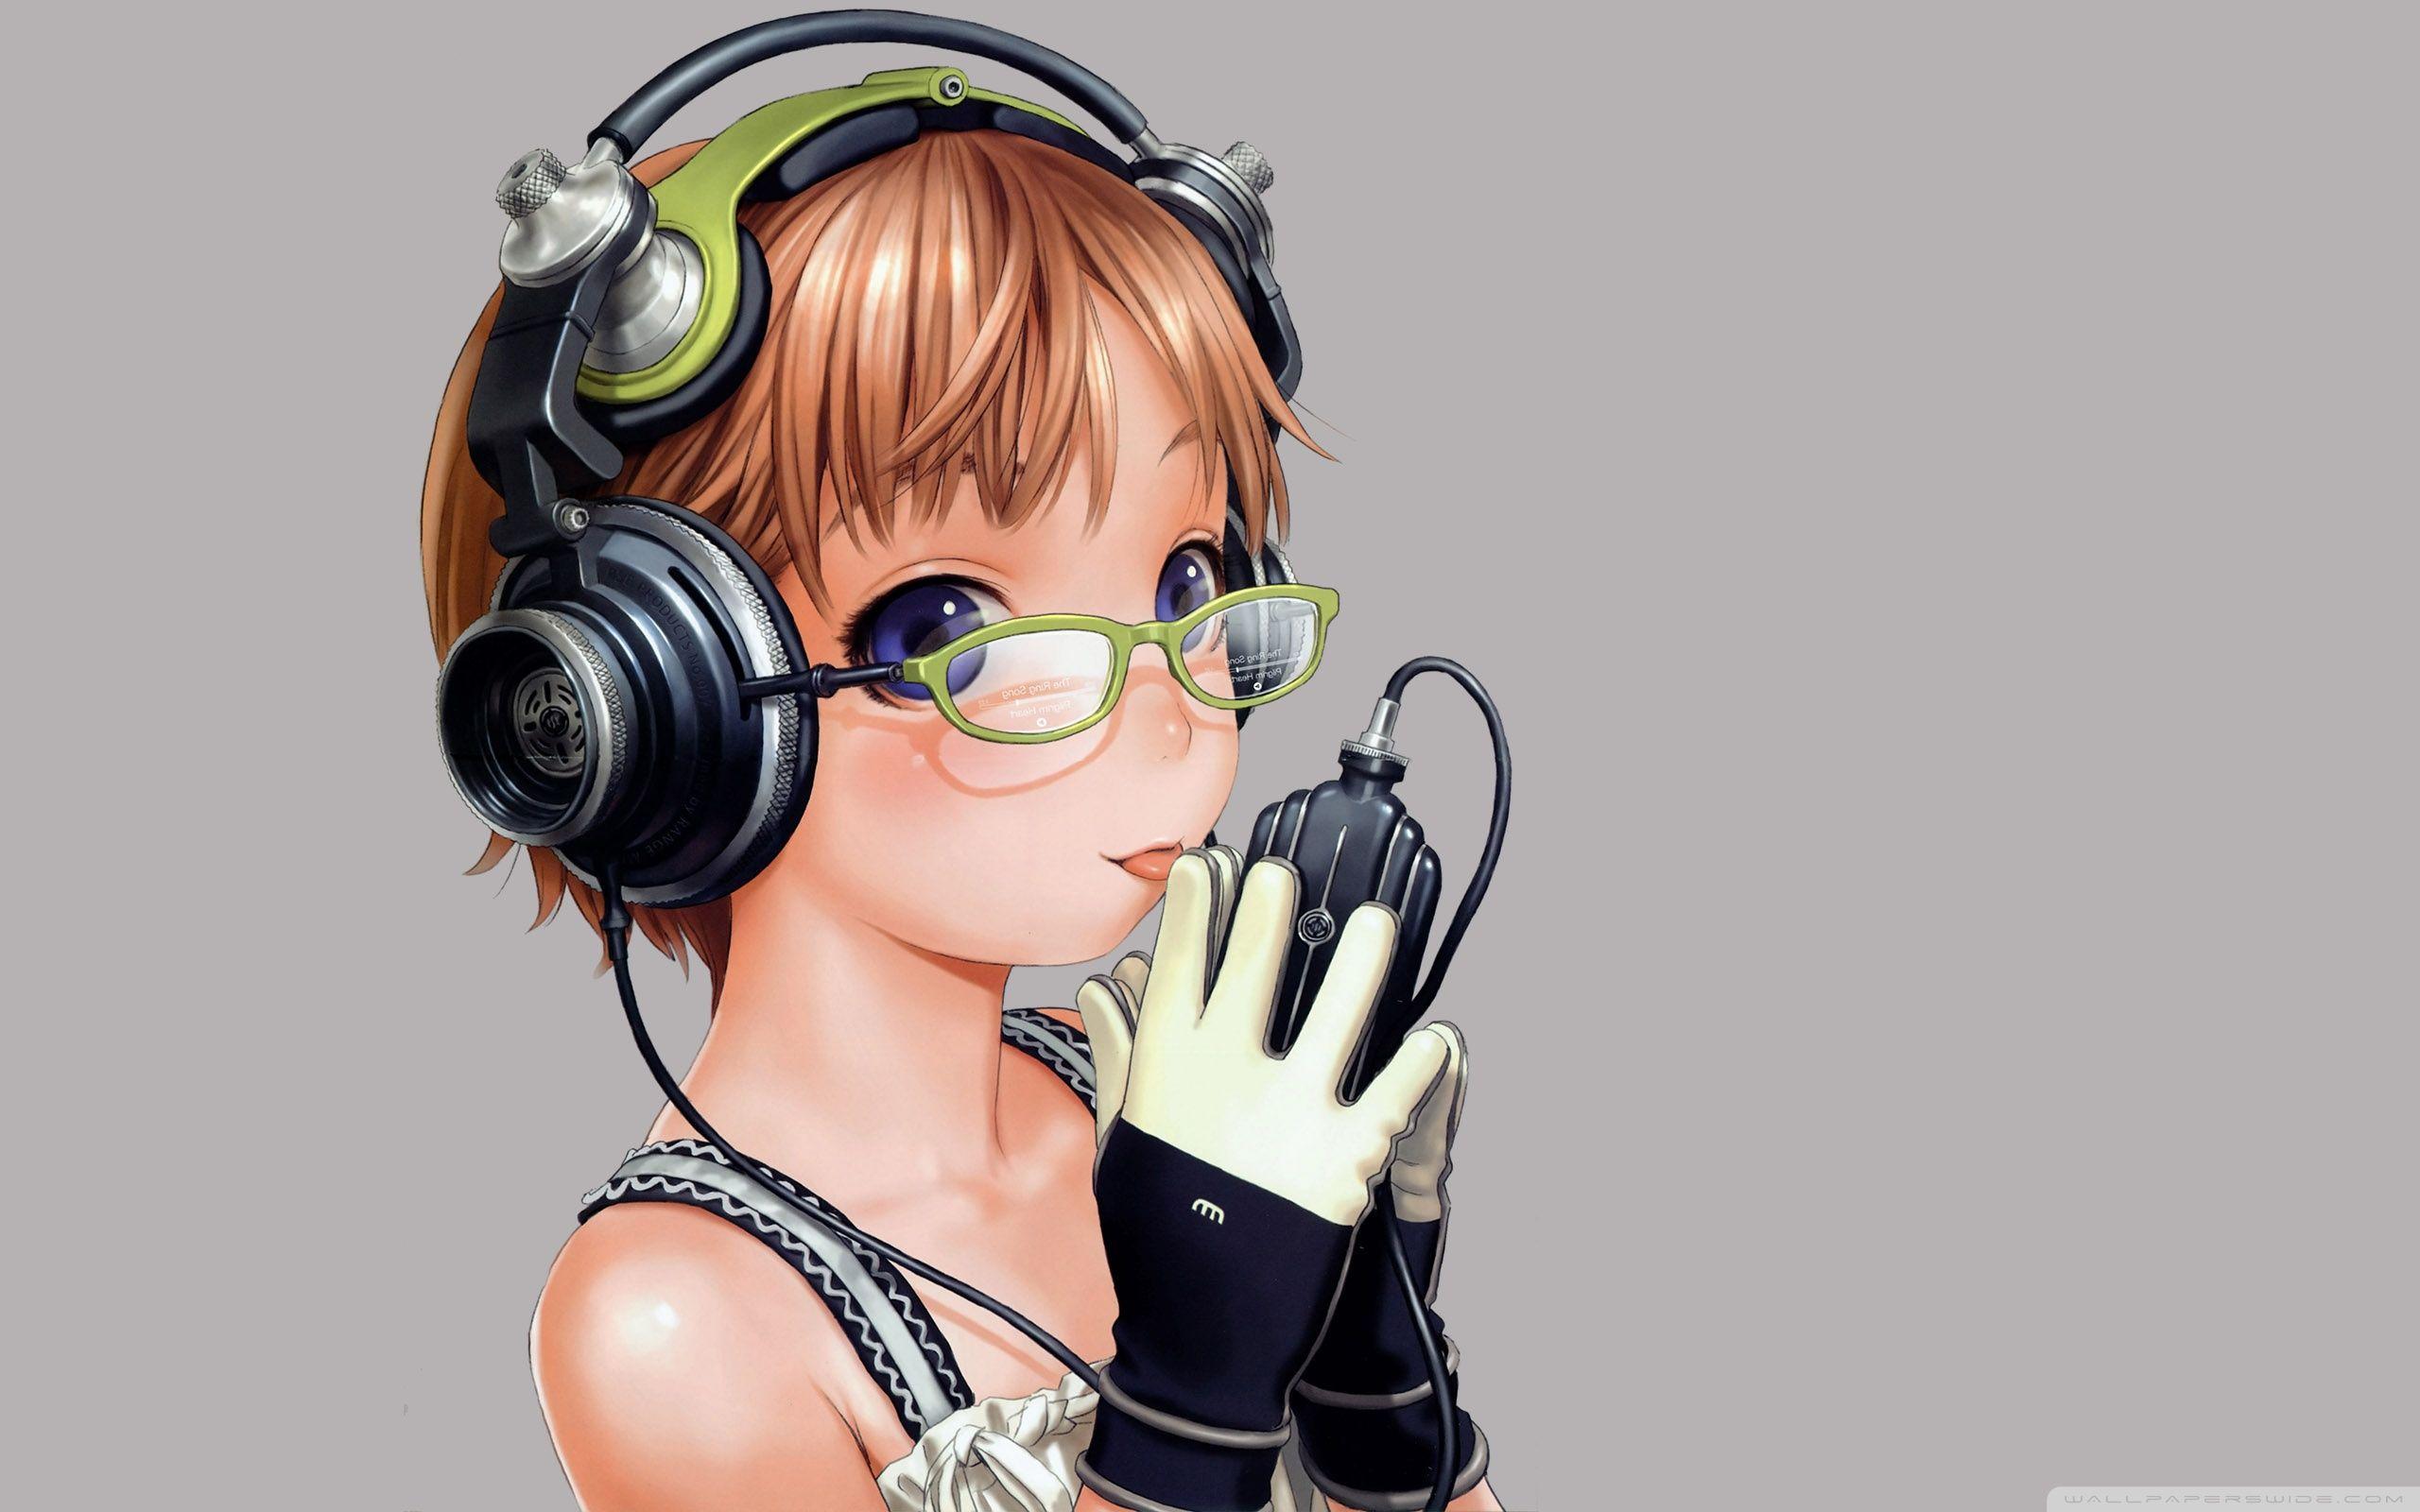 Listening Music Anime Ultra HD Desktop Background Wallpaper for 4K UHD TV, Tablet